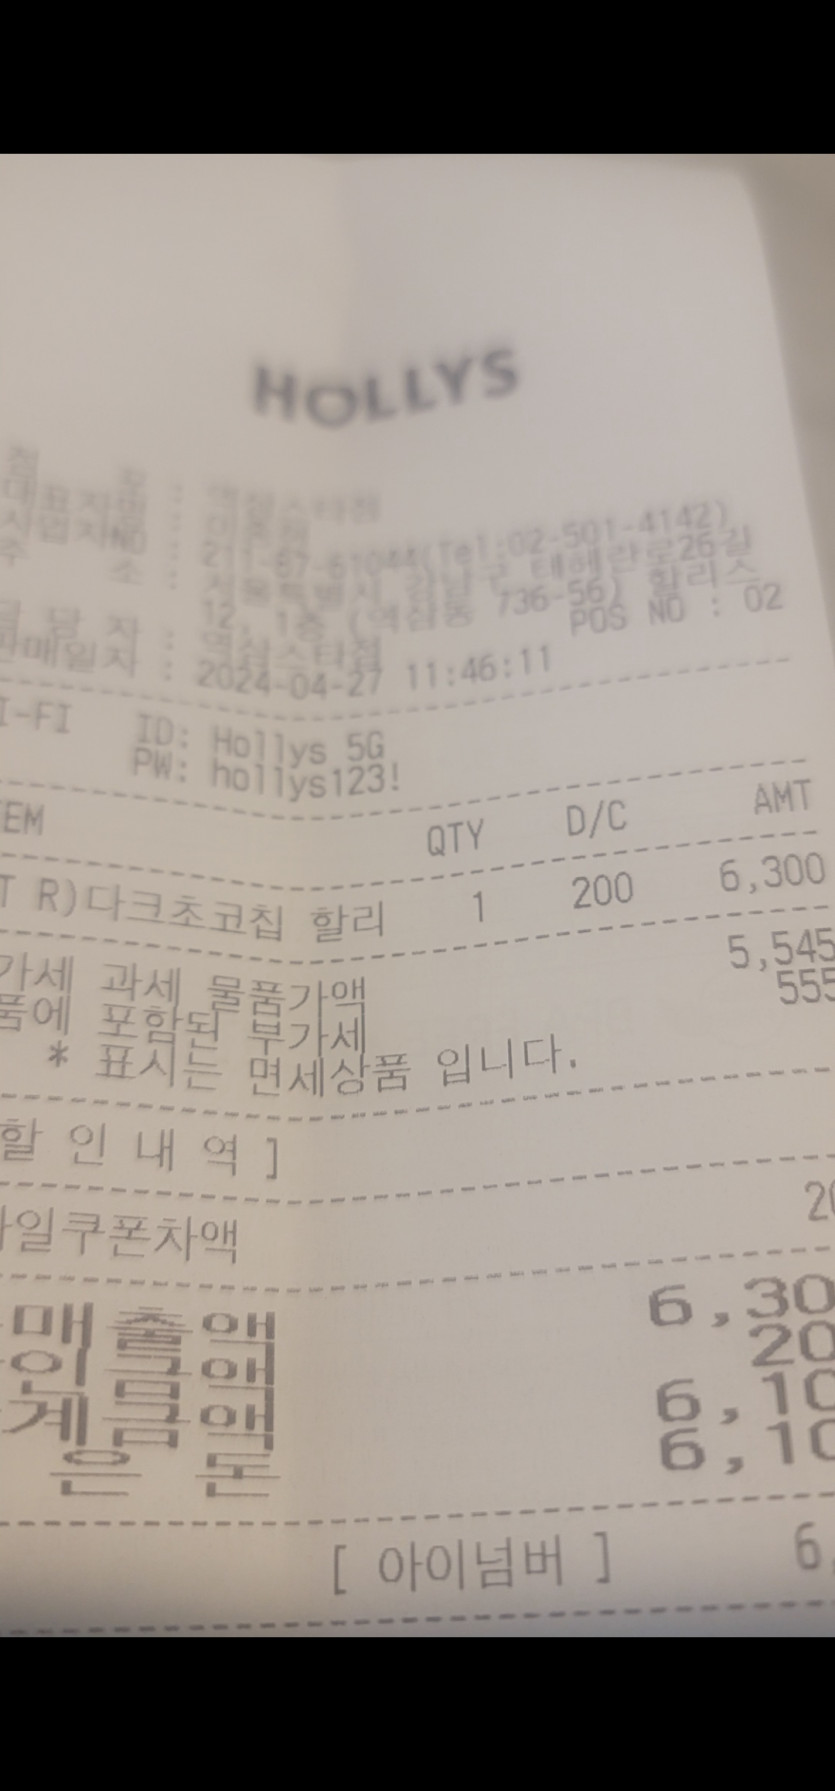 강남 중심의 역삼동 할리스 근황...(1)